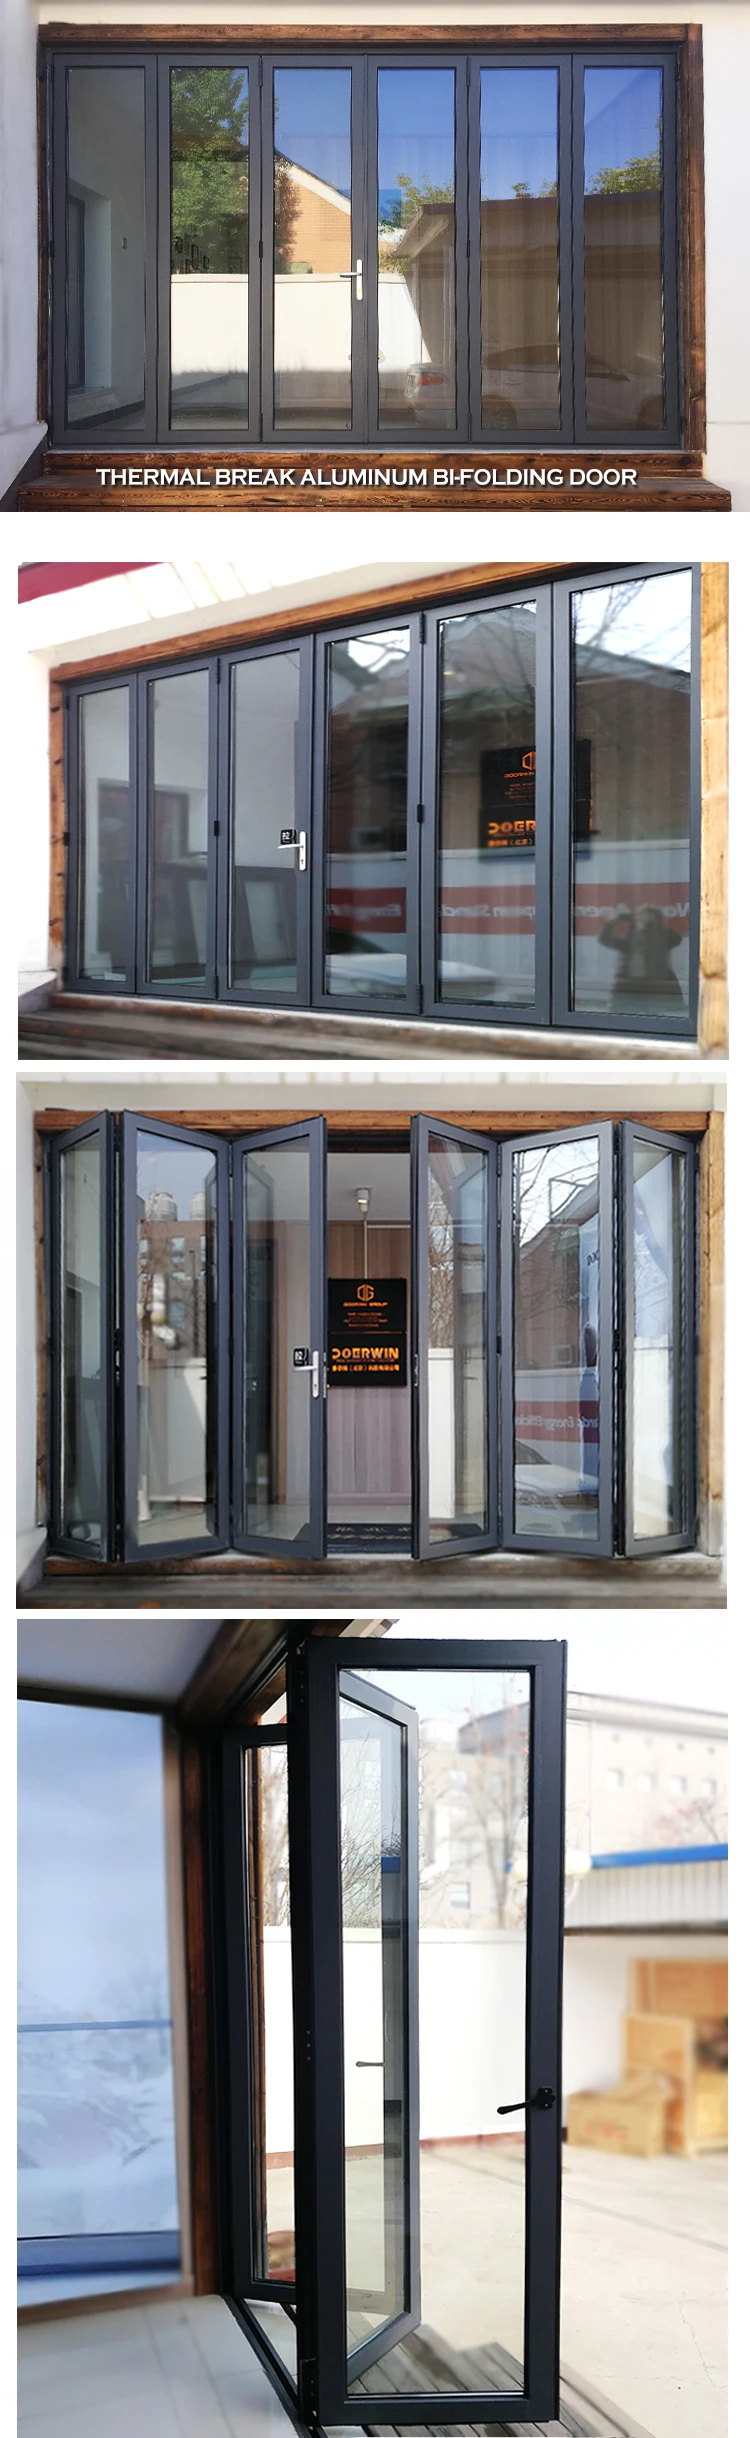 Doorwin aluminium bifold doors- thermal break aluminum bifolding door for villa